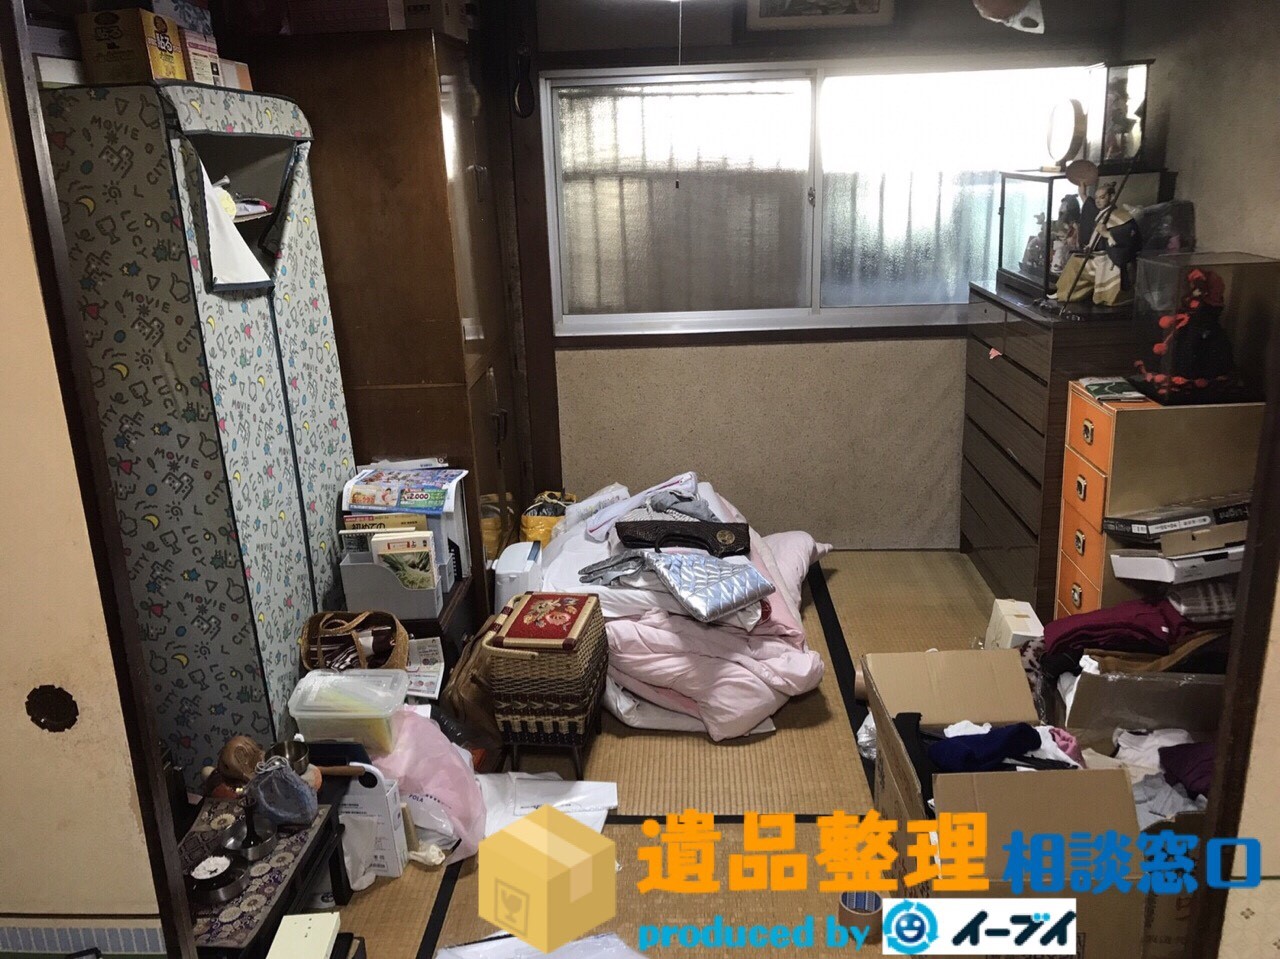 大阪府枚方市で遺品整理作業に伴い家具処分や遺品の処分をしました。のアイキャッチ